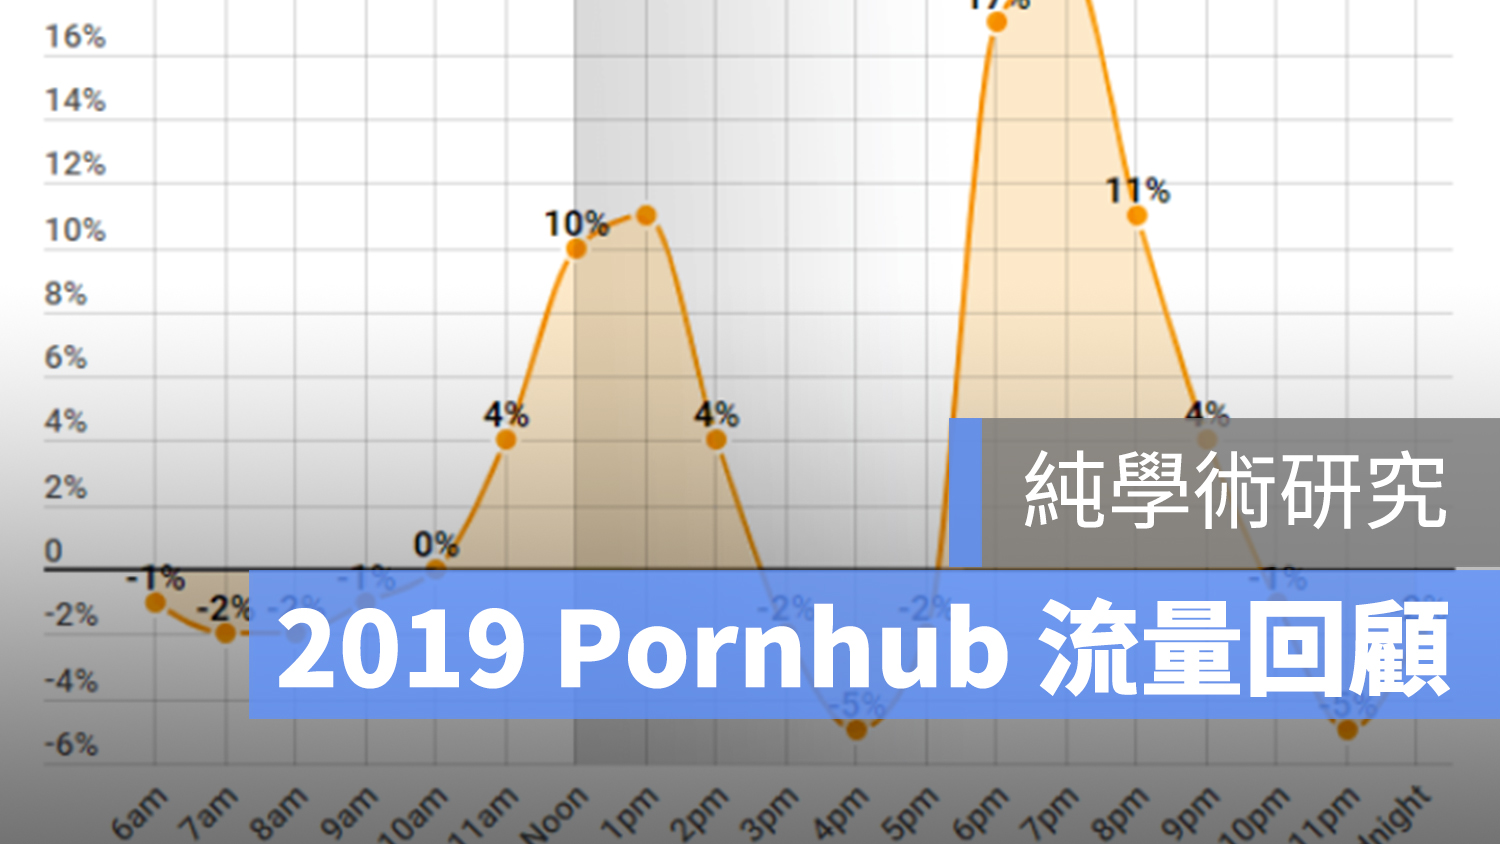 Pornhub 流量 2019 回顧